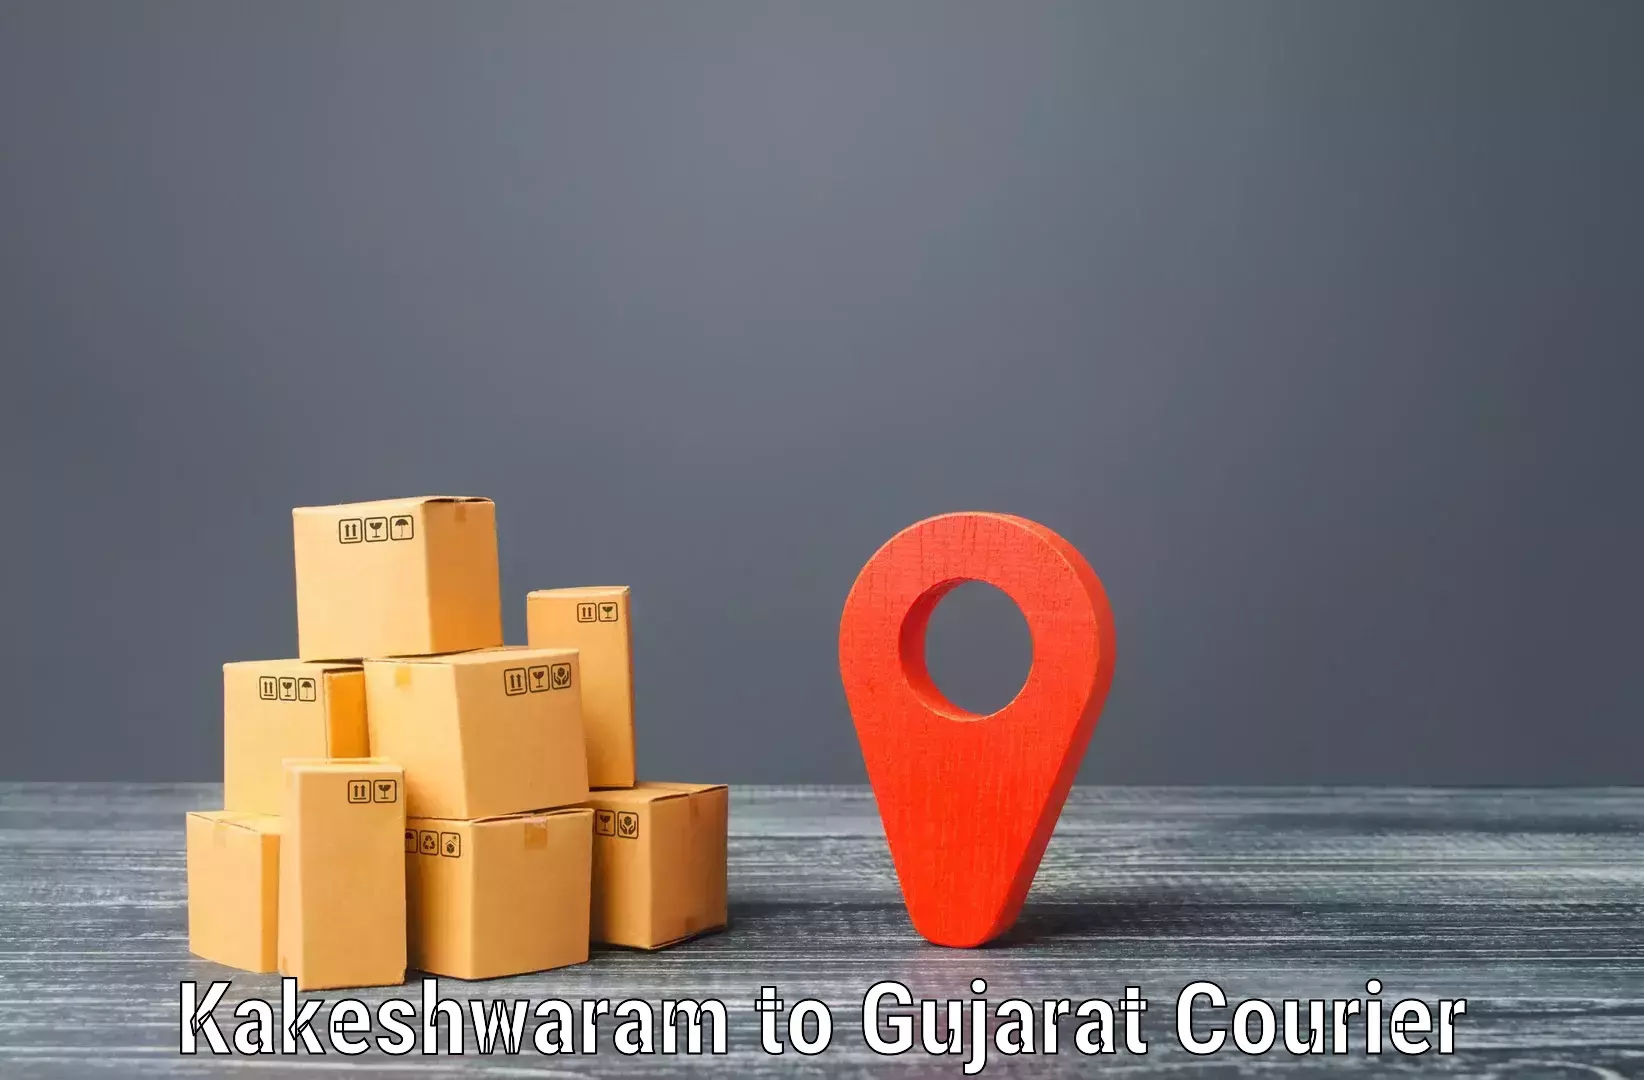 Automated shipping processes Kakeshwaram to Porbandar